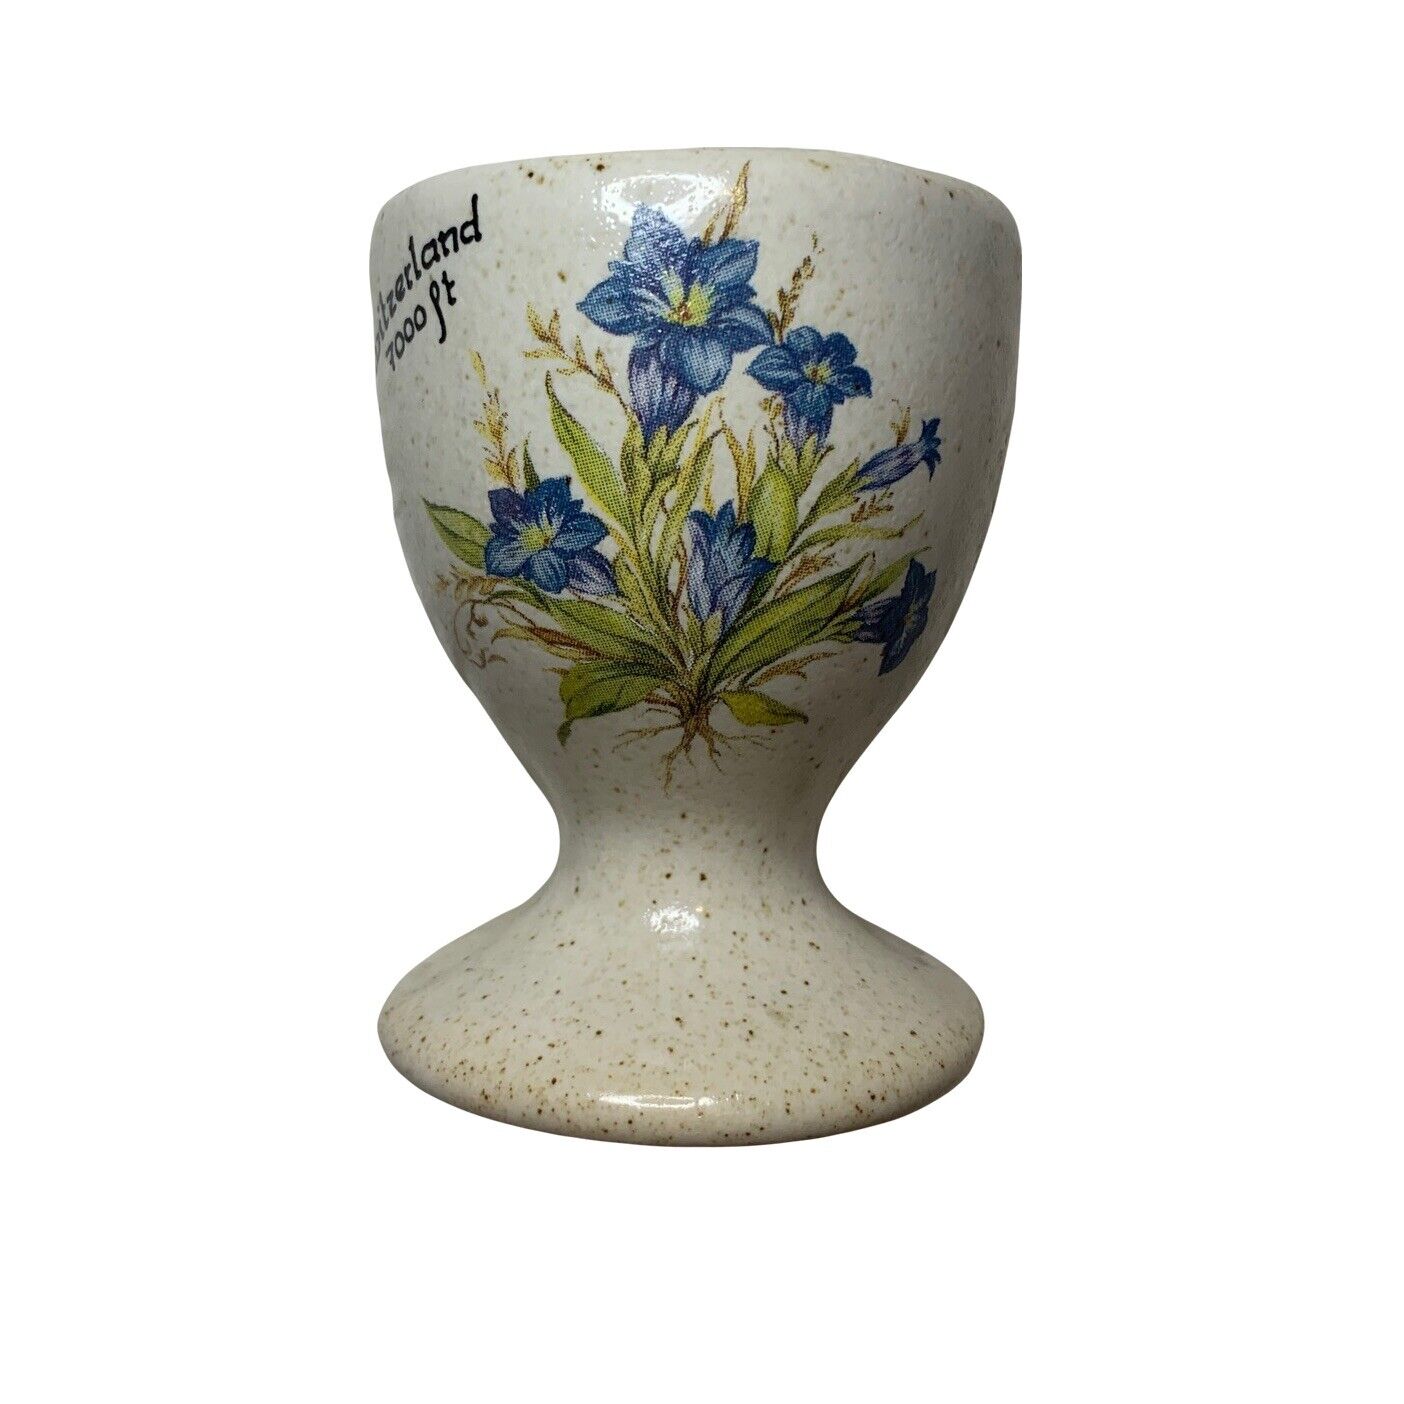 Vintage Souvenir Egg Cup Tilatus Switzerland Ceramic Speckle Glaze Blue Flowers